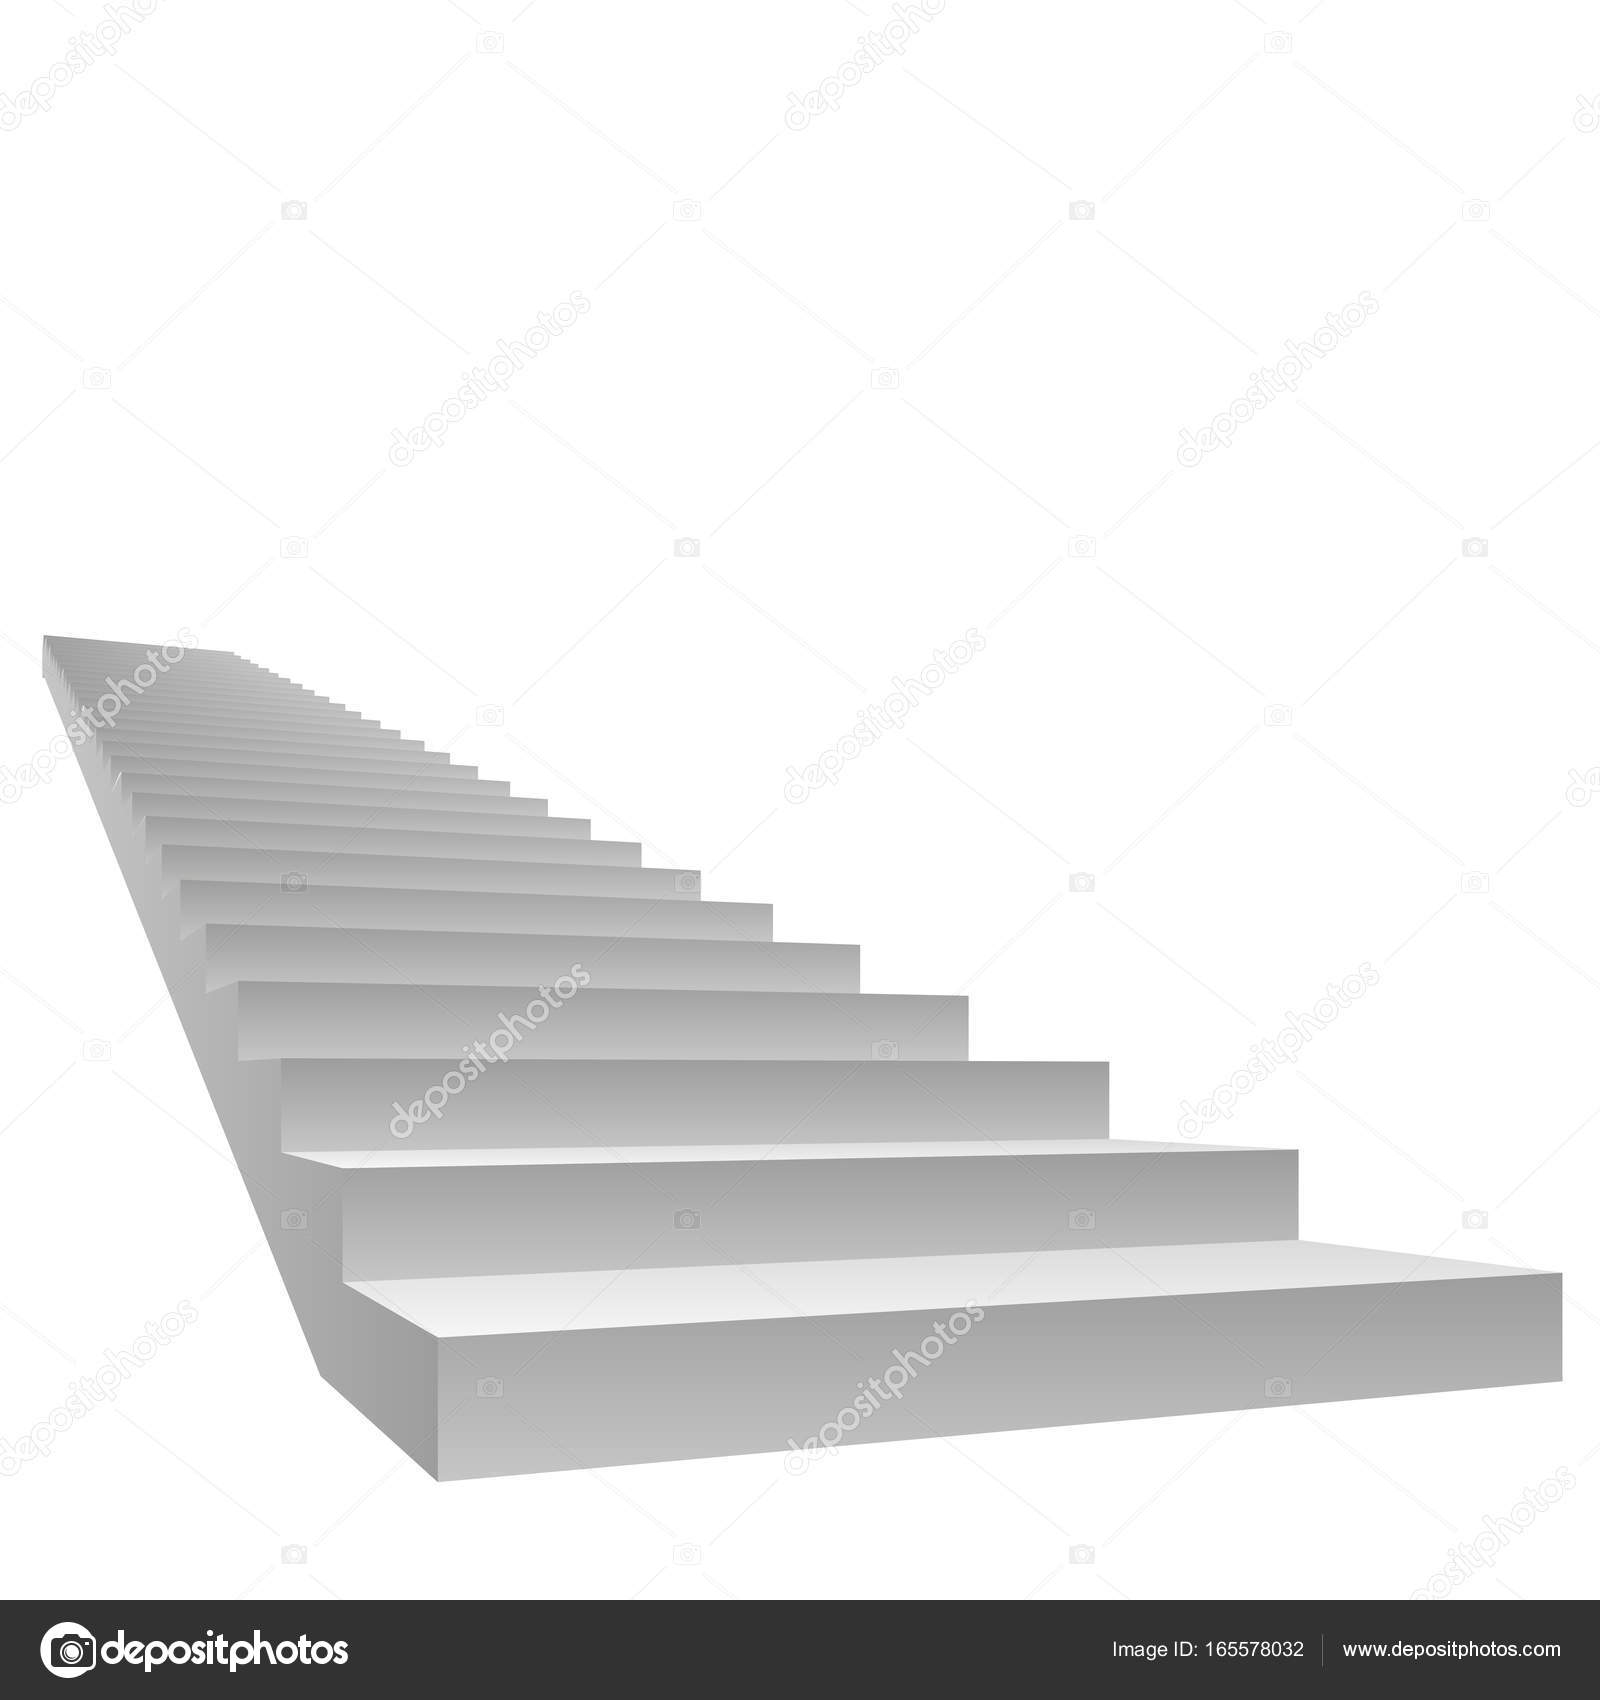  3d  rendu d escalier  isol  sur blanc  Photographie 